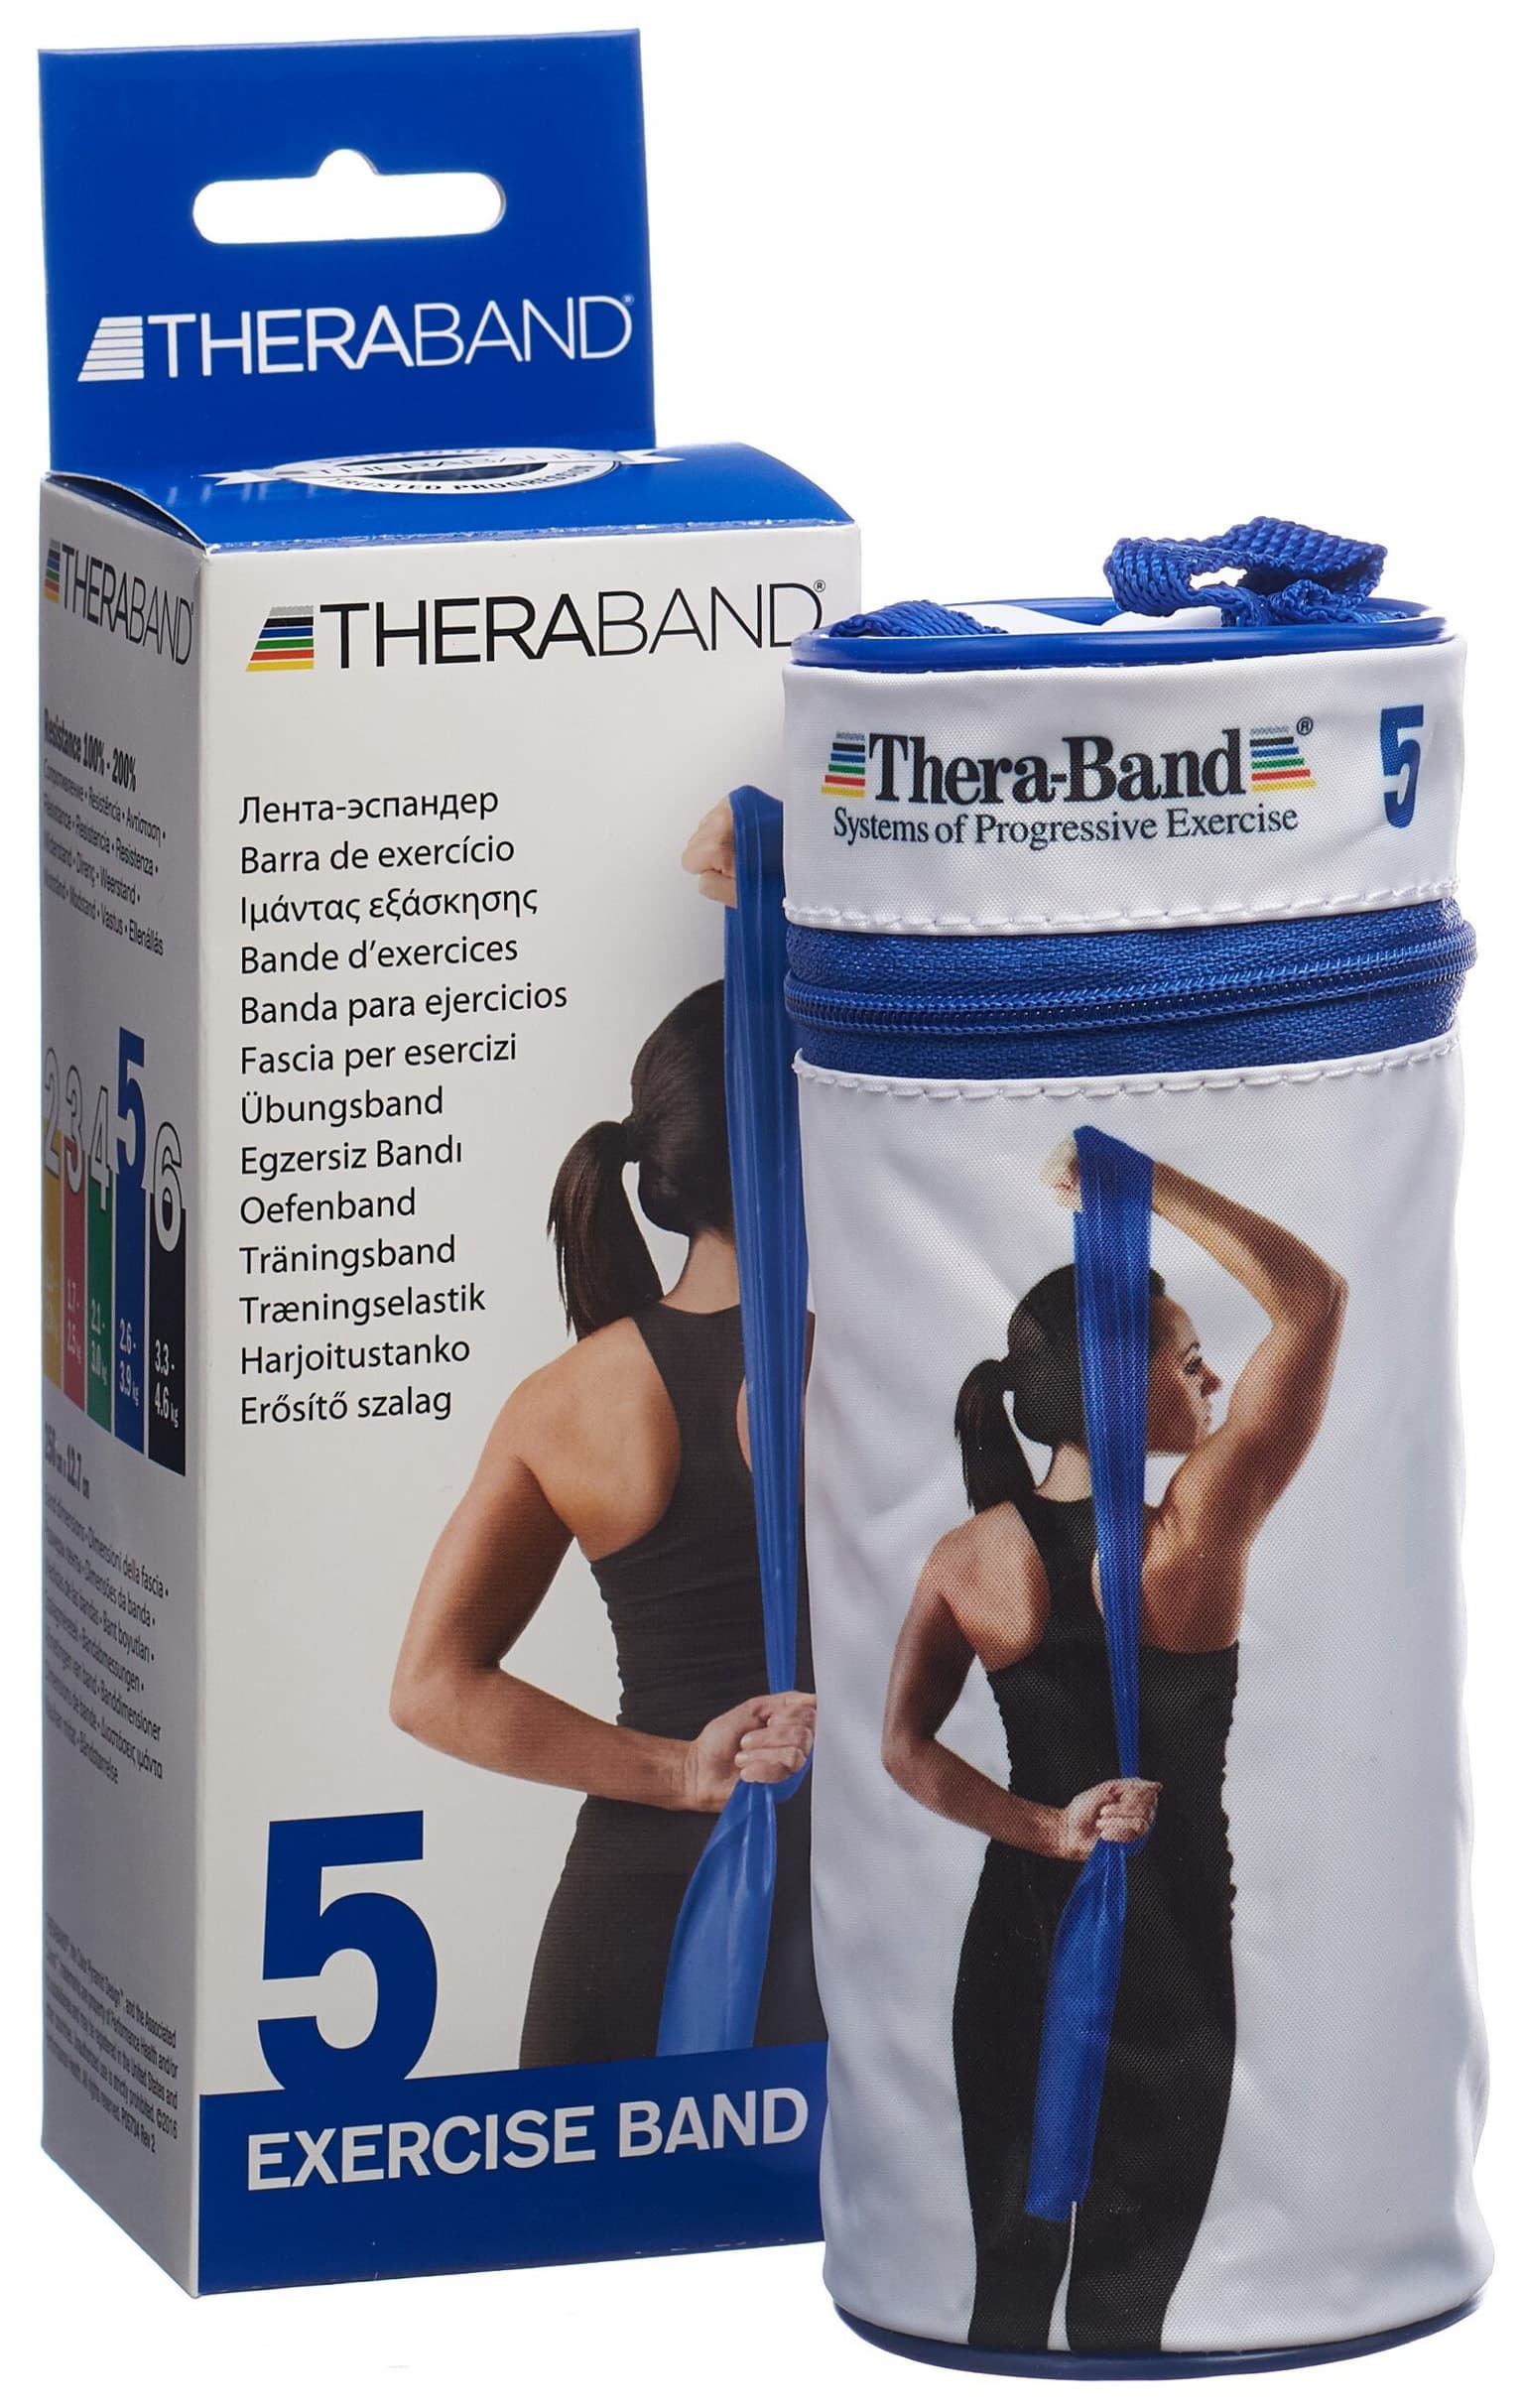 TheraBand TheraBand Fitnessband Fitnessband 3